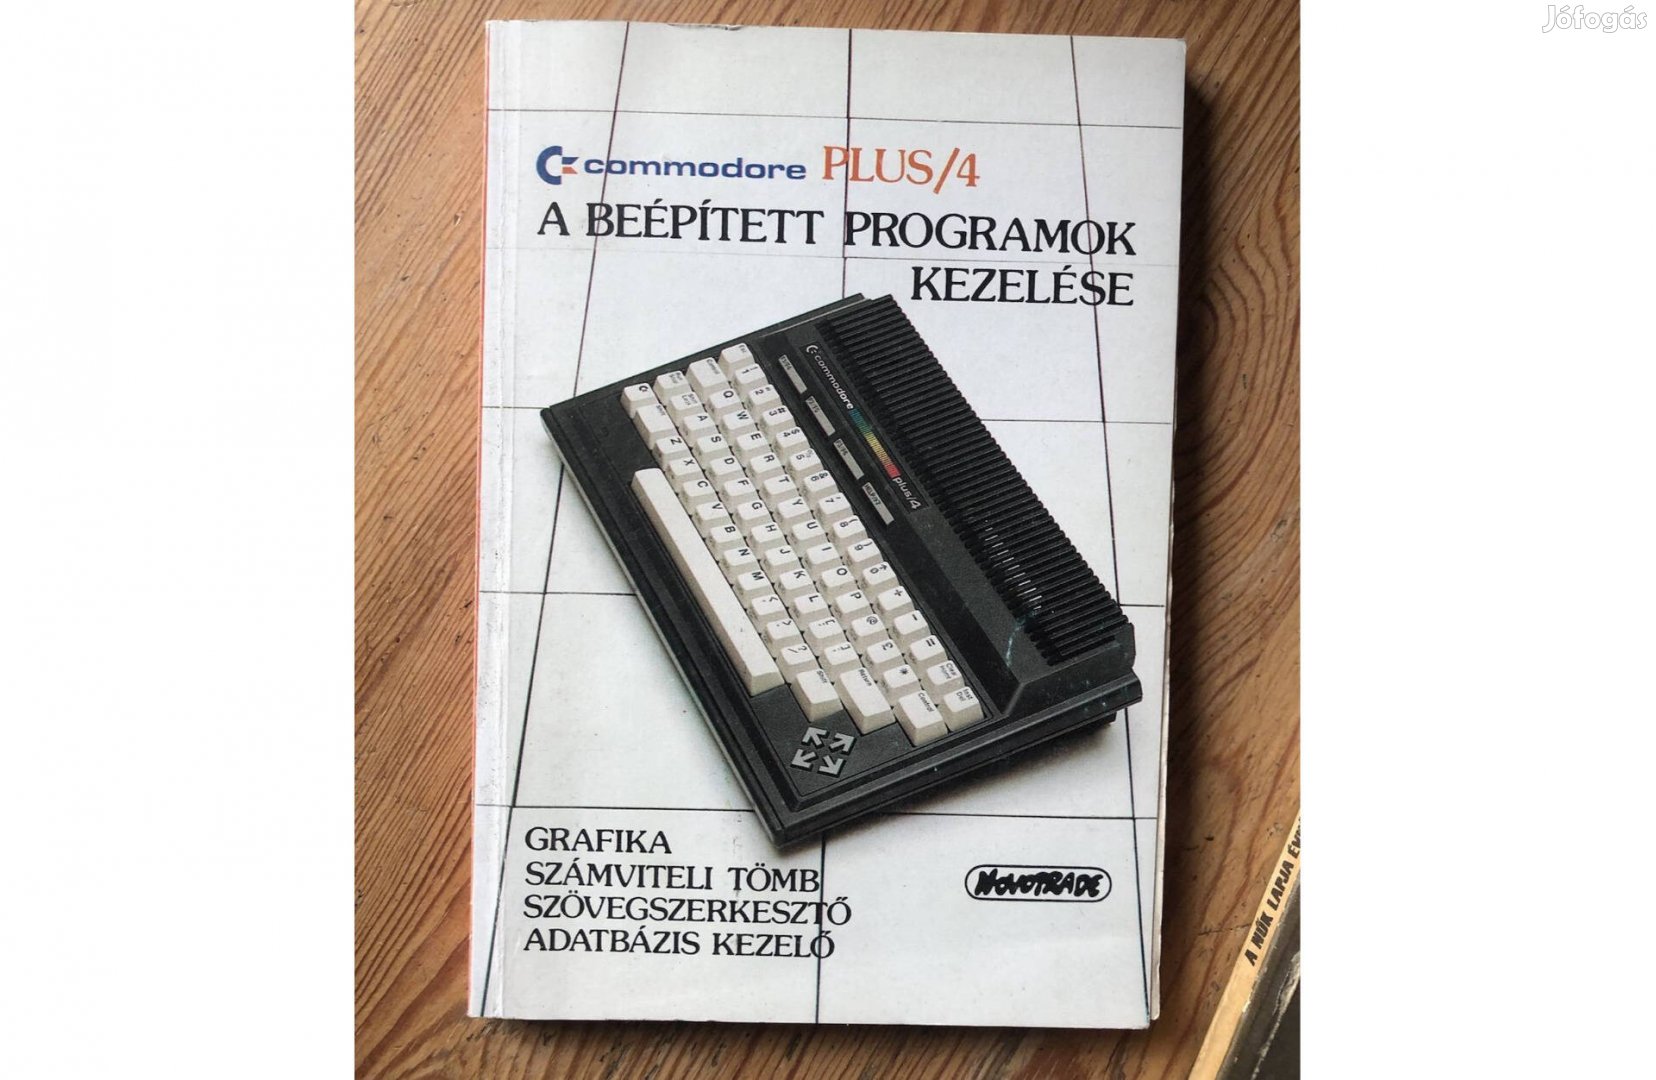 Commodore Plus /4 a beépített programok kezelése könyv 3500 Ft:Lenti